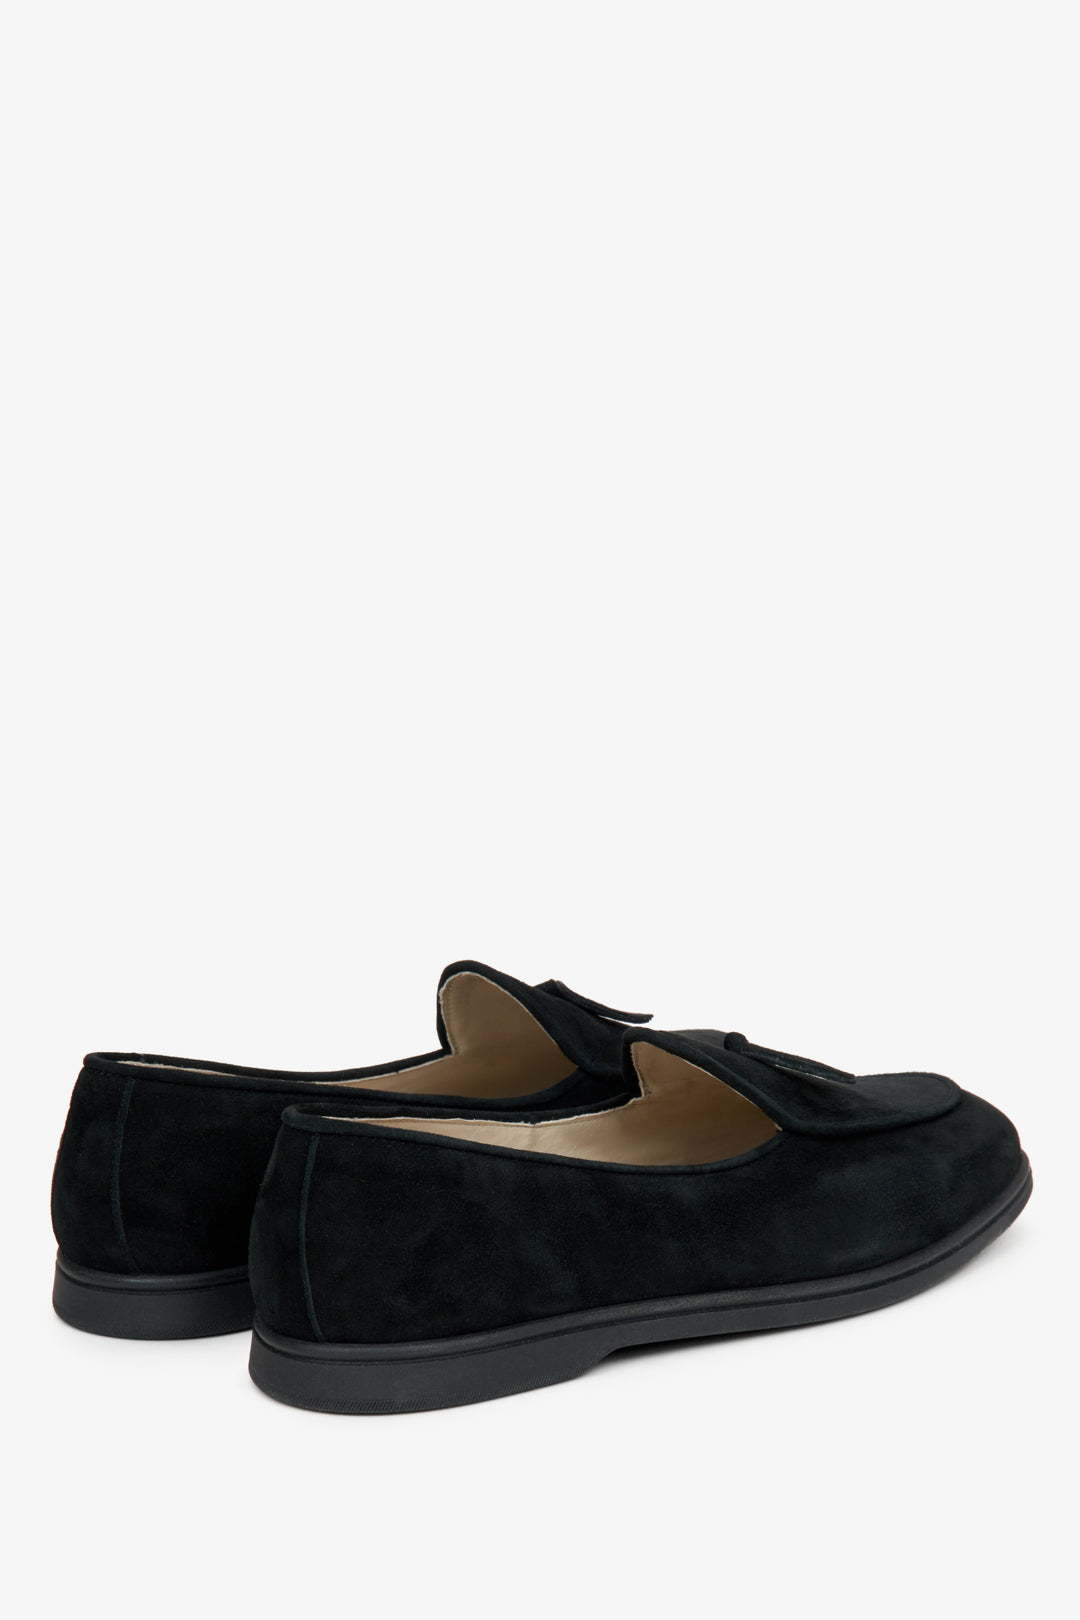 Damskie czarne mokasyny z weluru naturalnego Estro - zbliżenie na zapiętek i linię boczną butów.